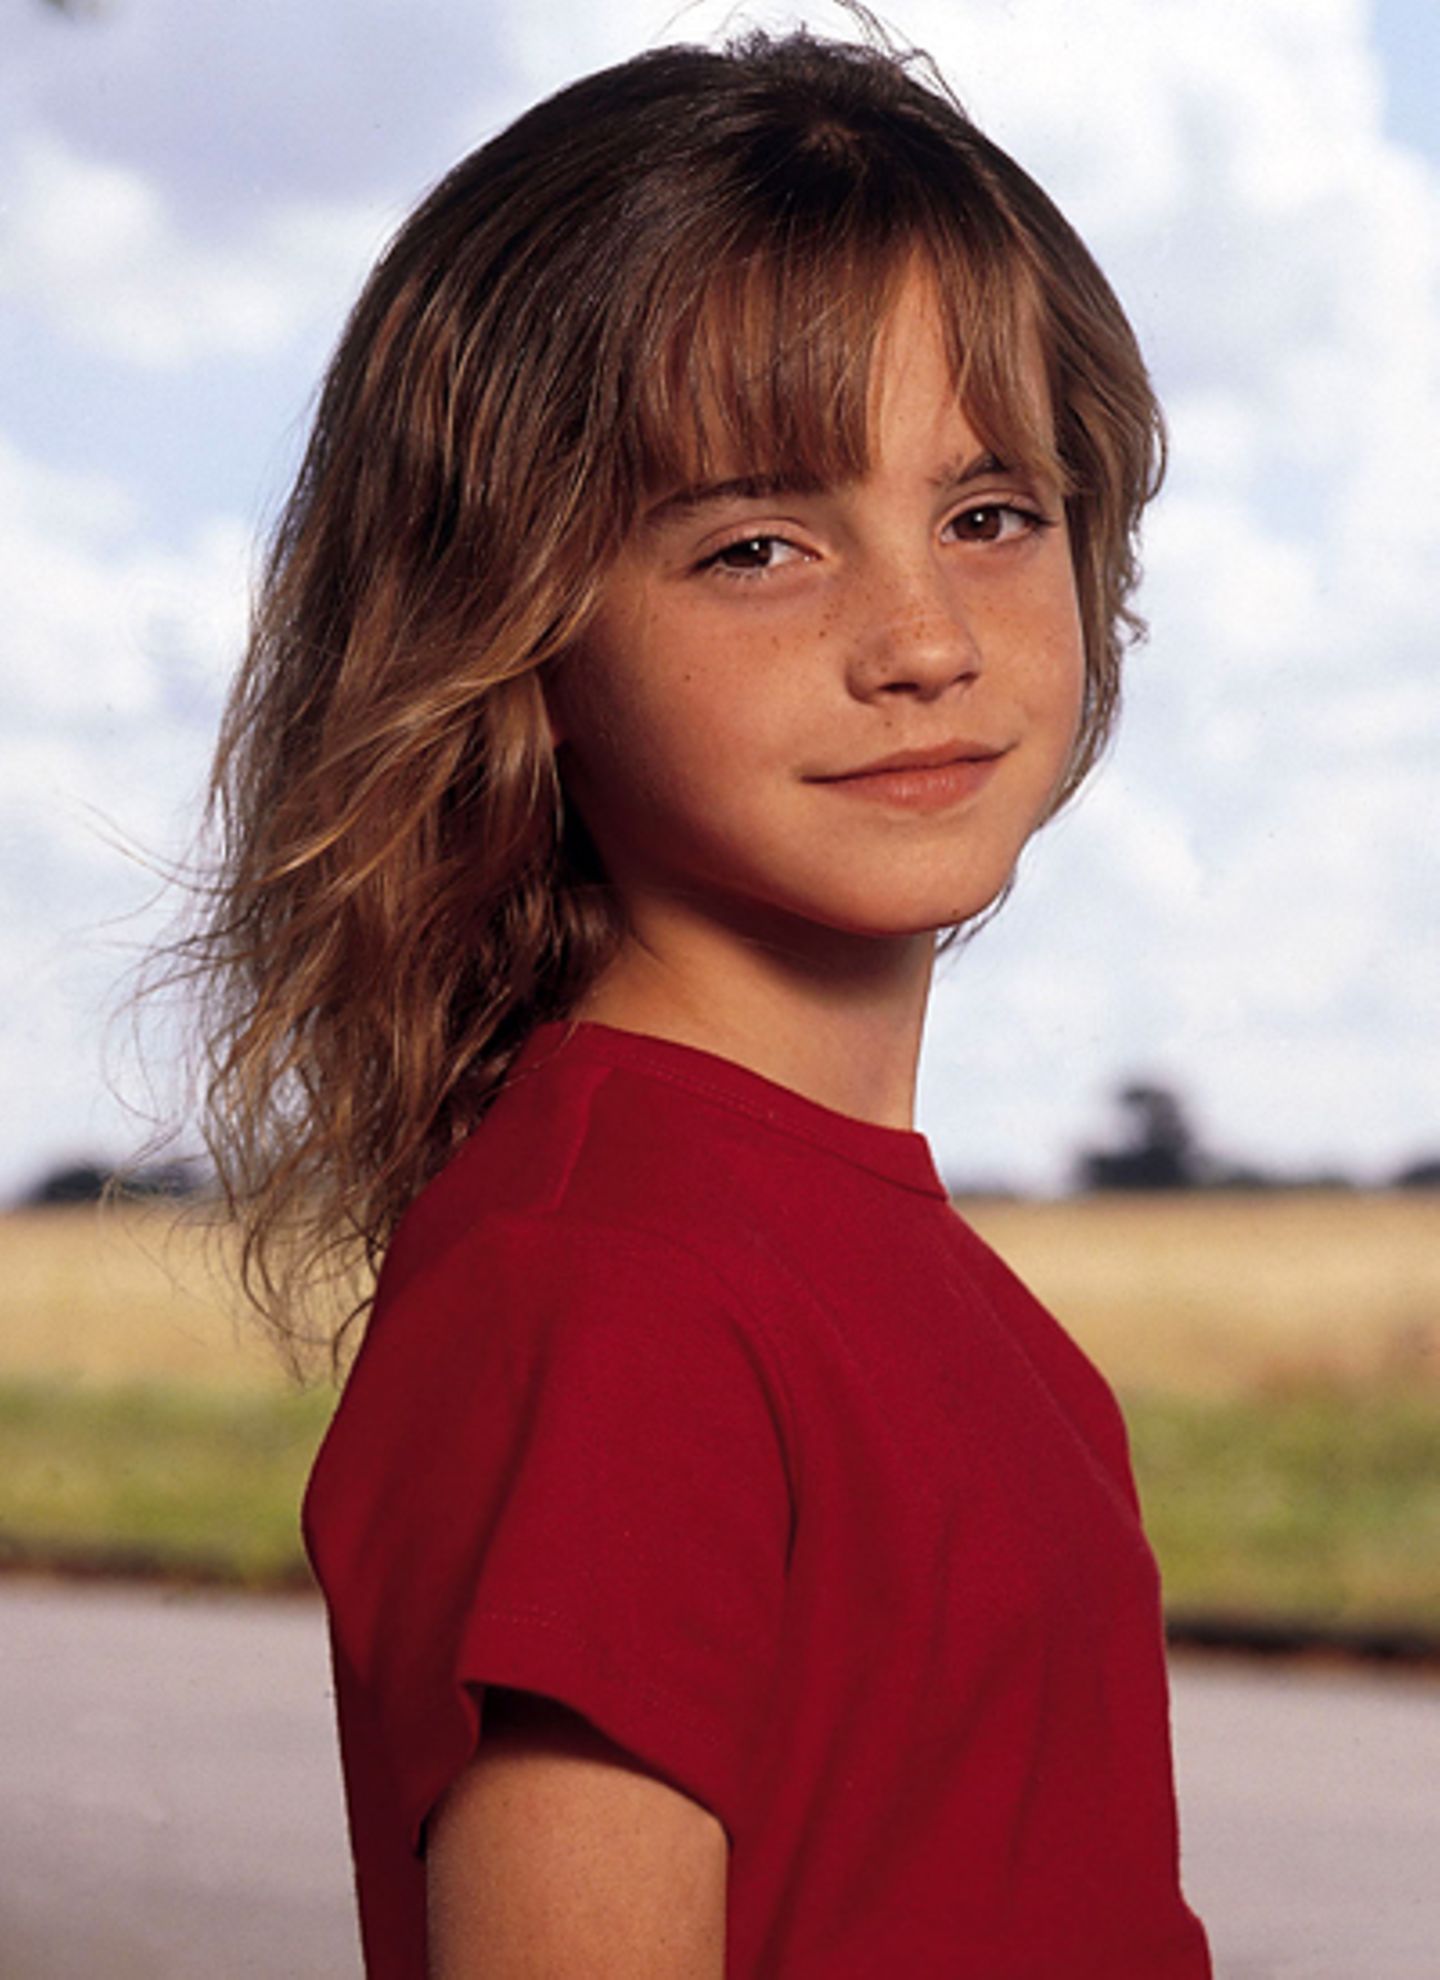 Harry Potter, damals-heute: 2000: Zum Knuddeln sieht Emma Watson im Jahr 2000 aus. Sie spielt bei "Harry Potter" die Rolle der H